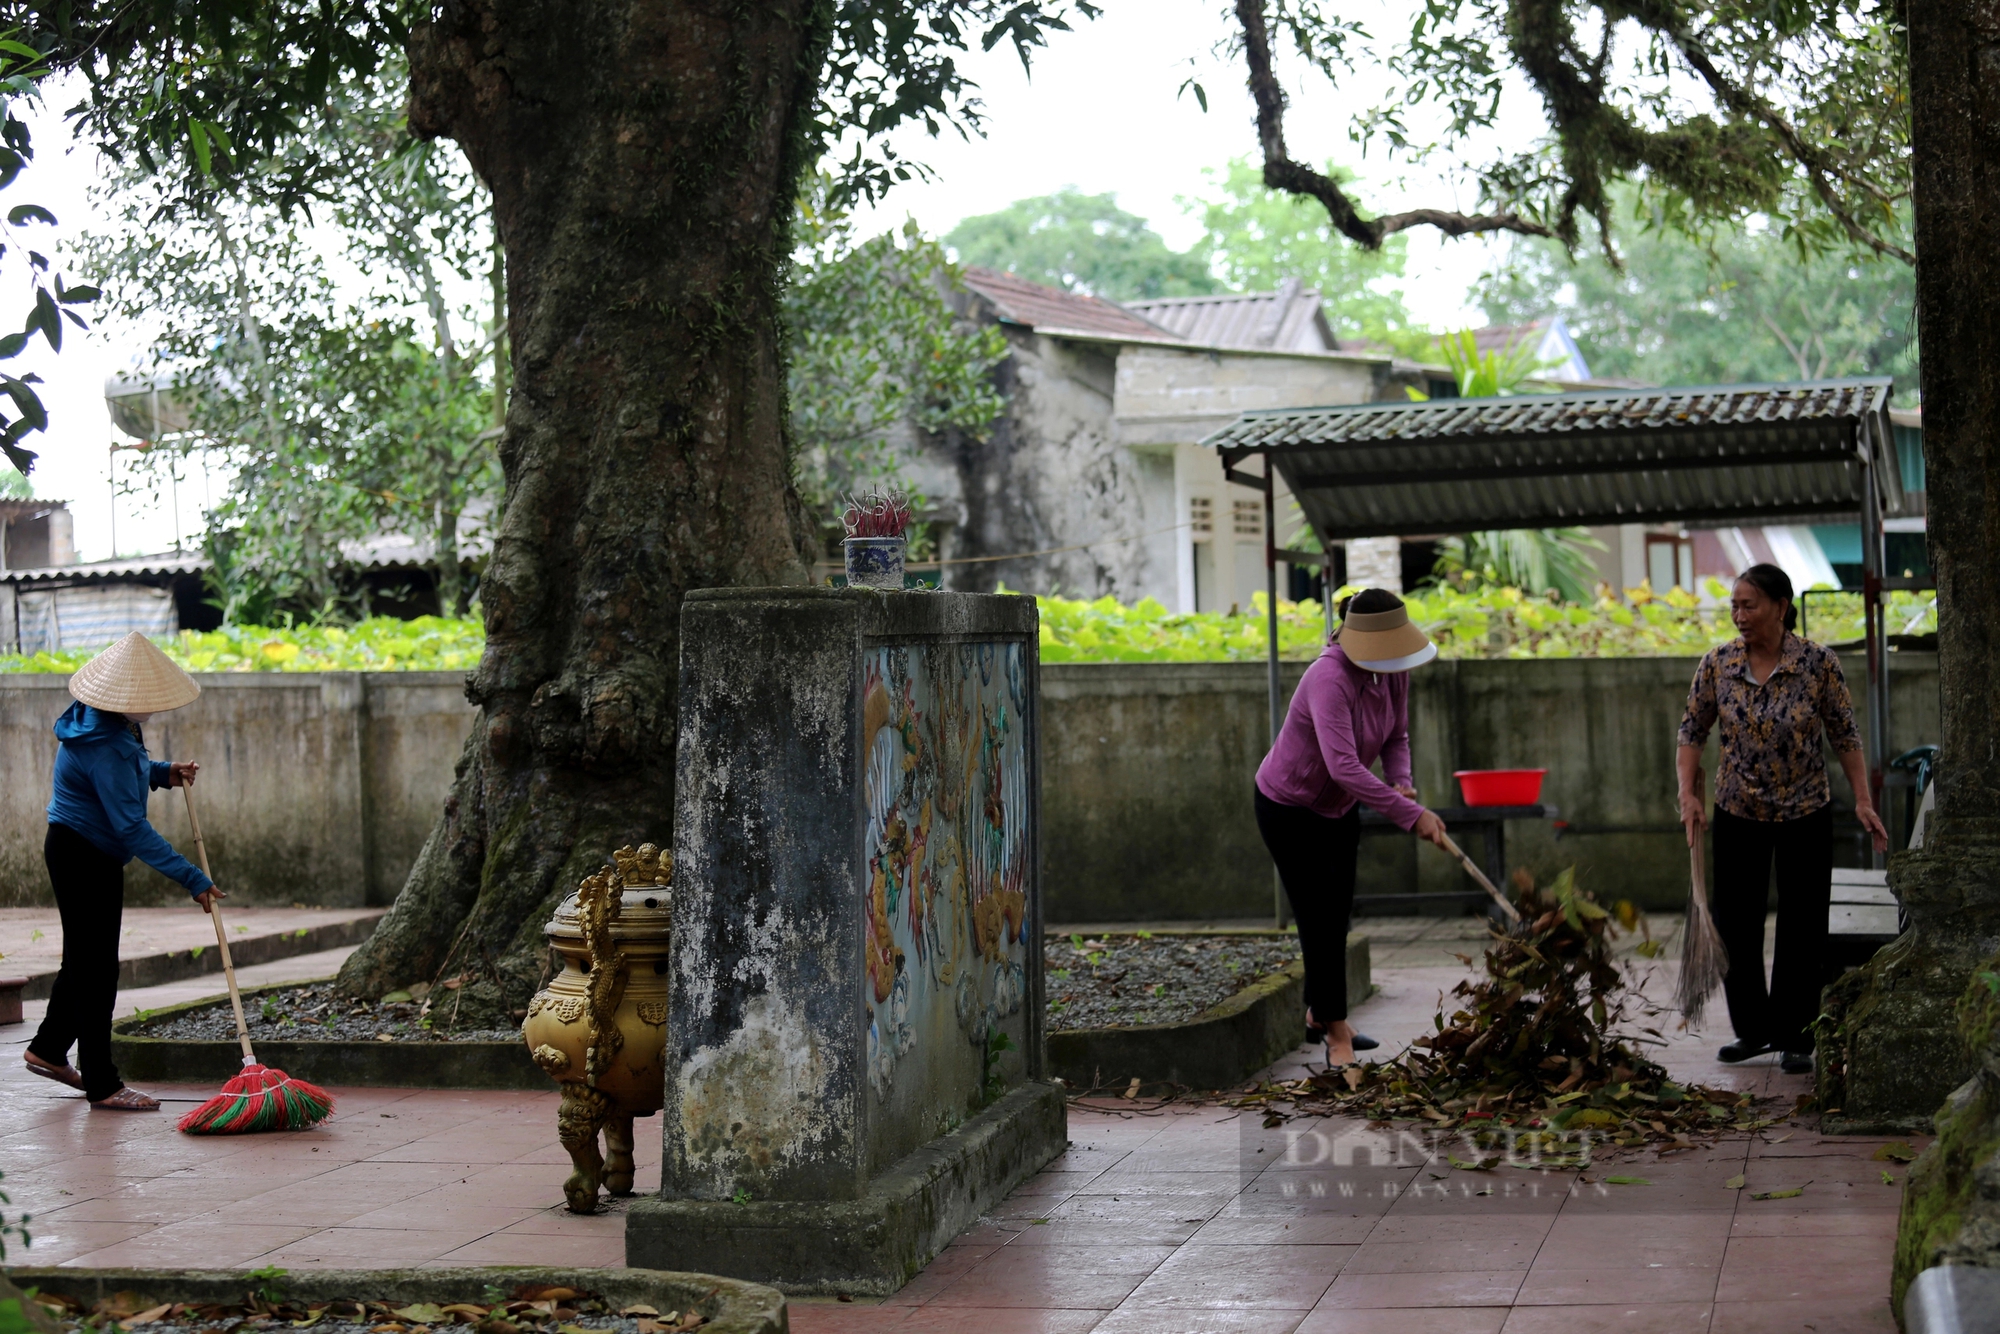 Ở một thị trấn của Hà Tĩnh có 2 cây cổ thụ 600 tuổi "trấn" cửa đền Cương Quốc Công Nguyễn Xí- Ảnh 9.